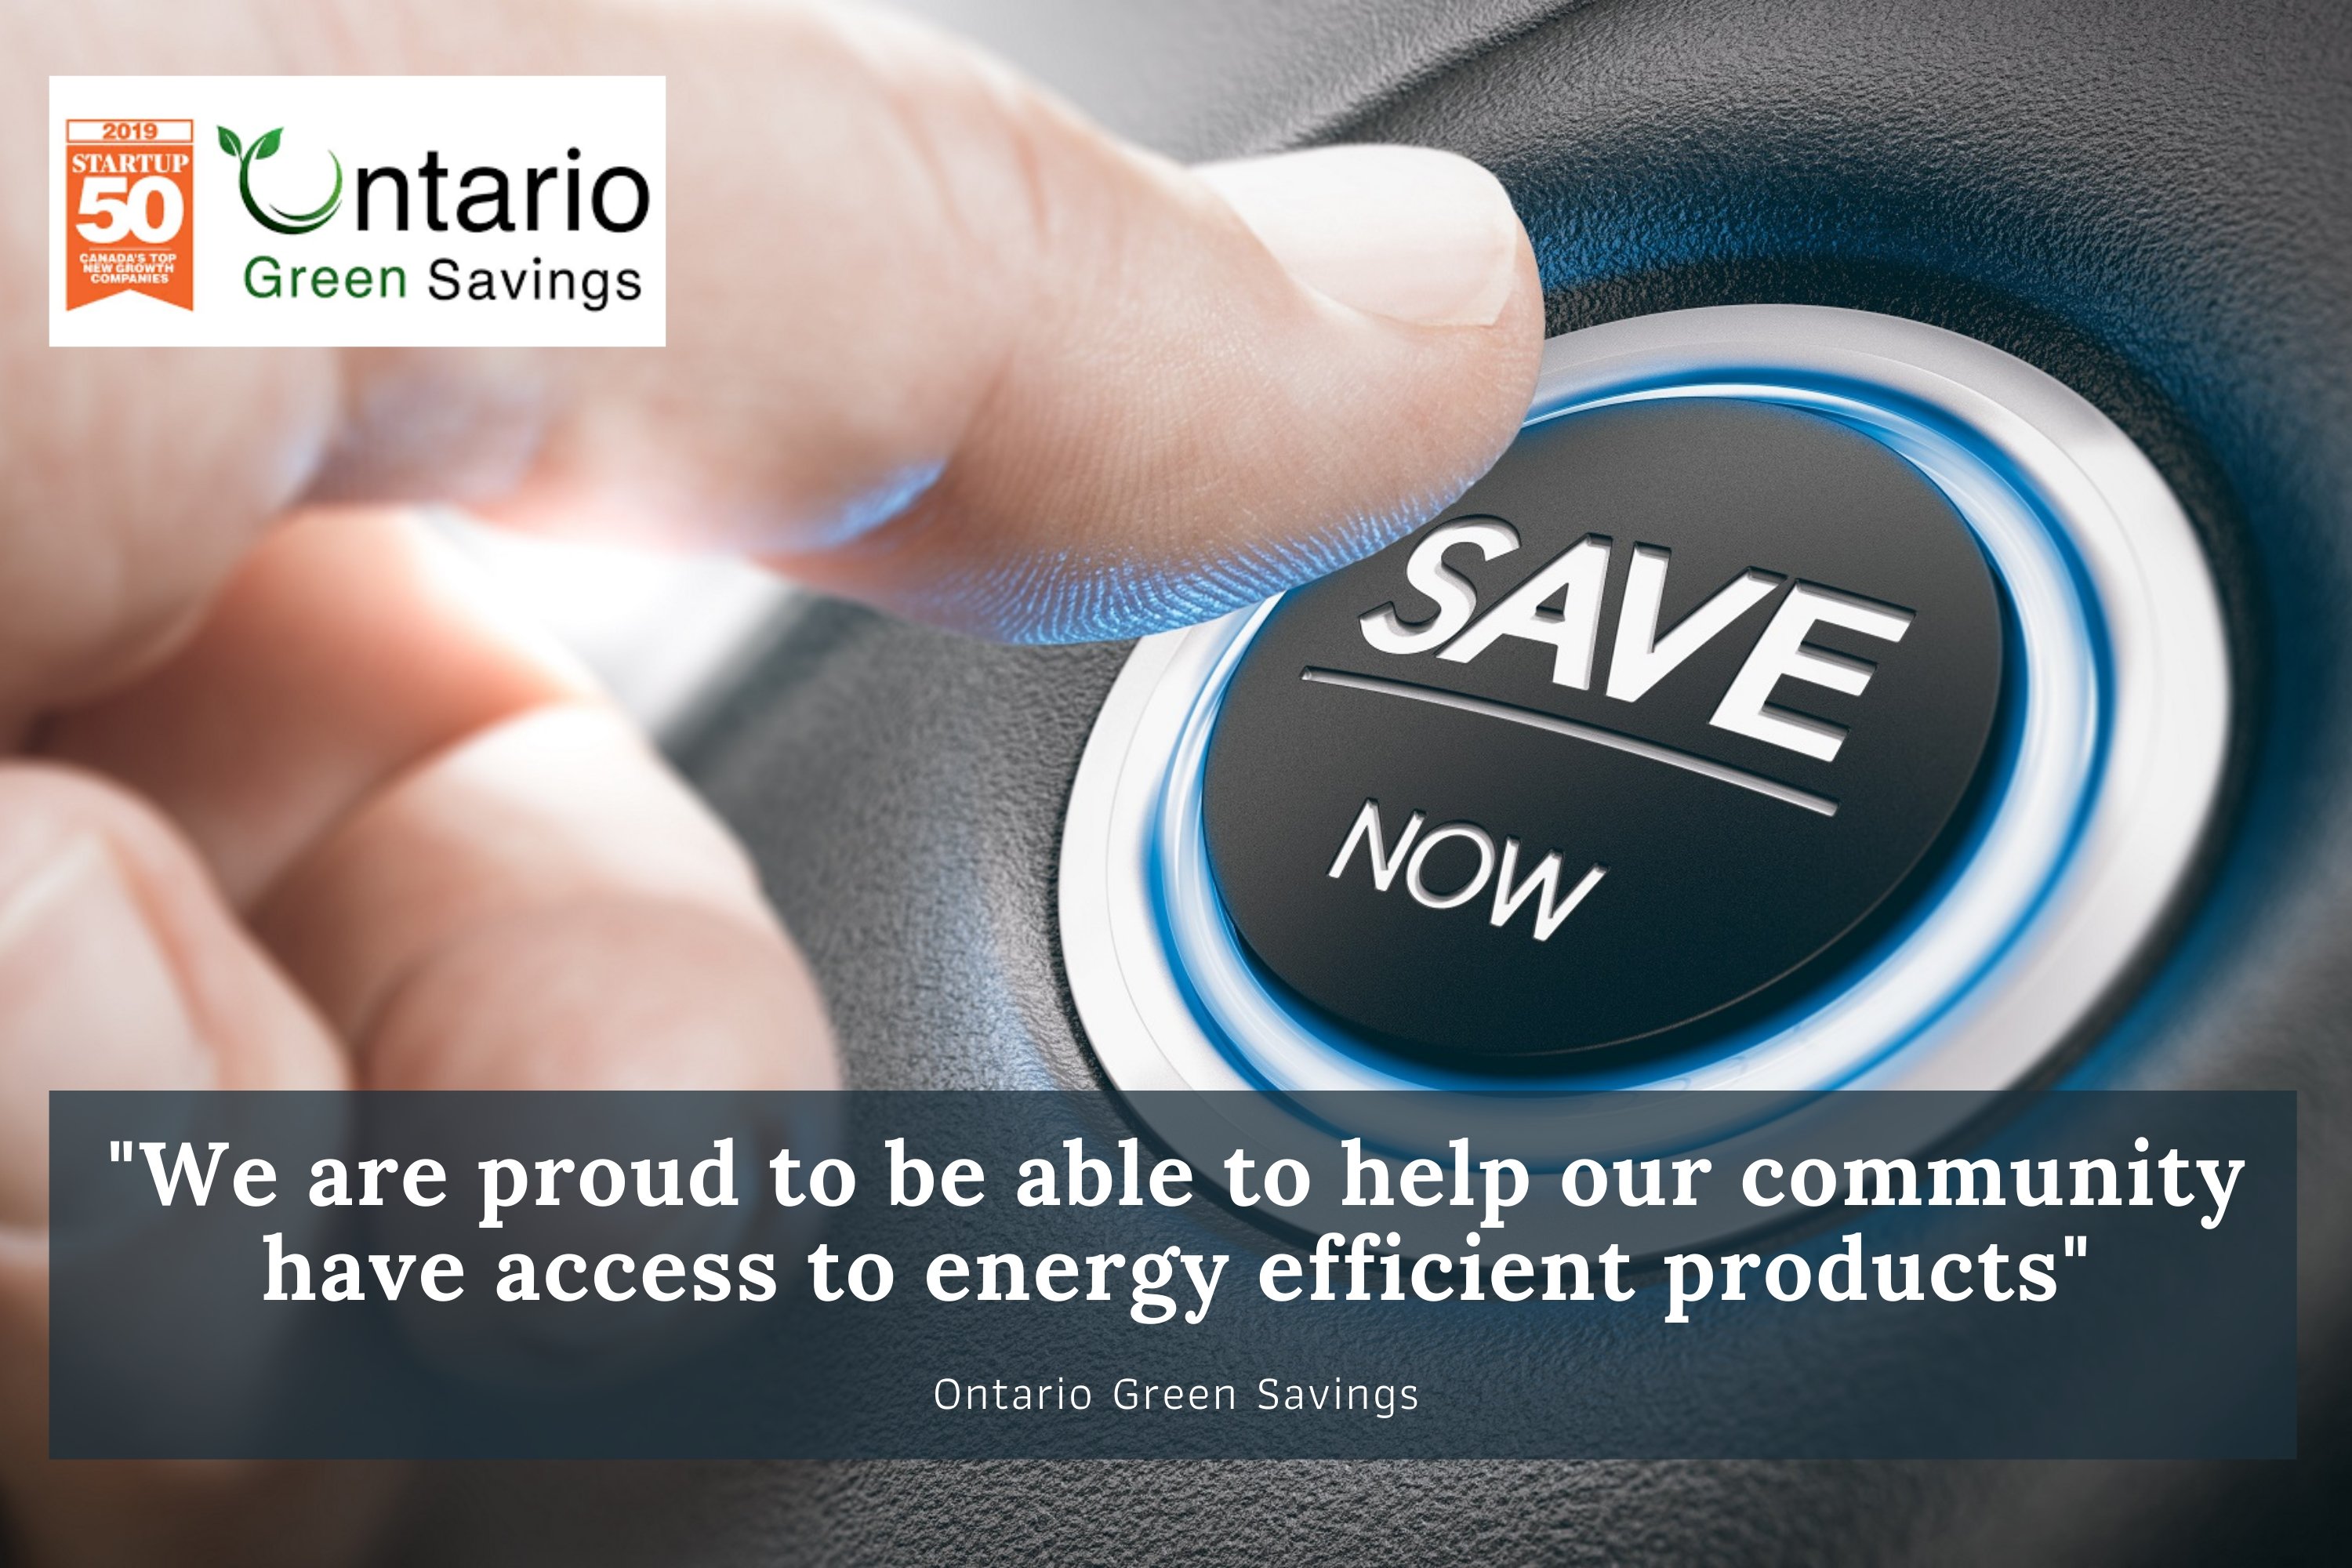 ontario-green-savings-is-helping-consumers-receive-energy-efficiency